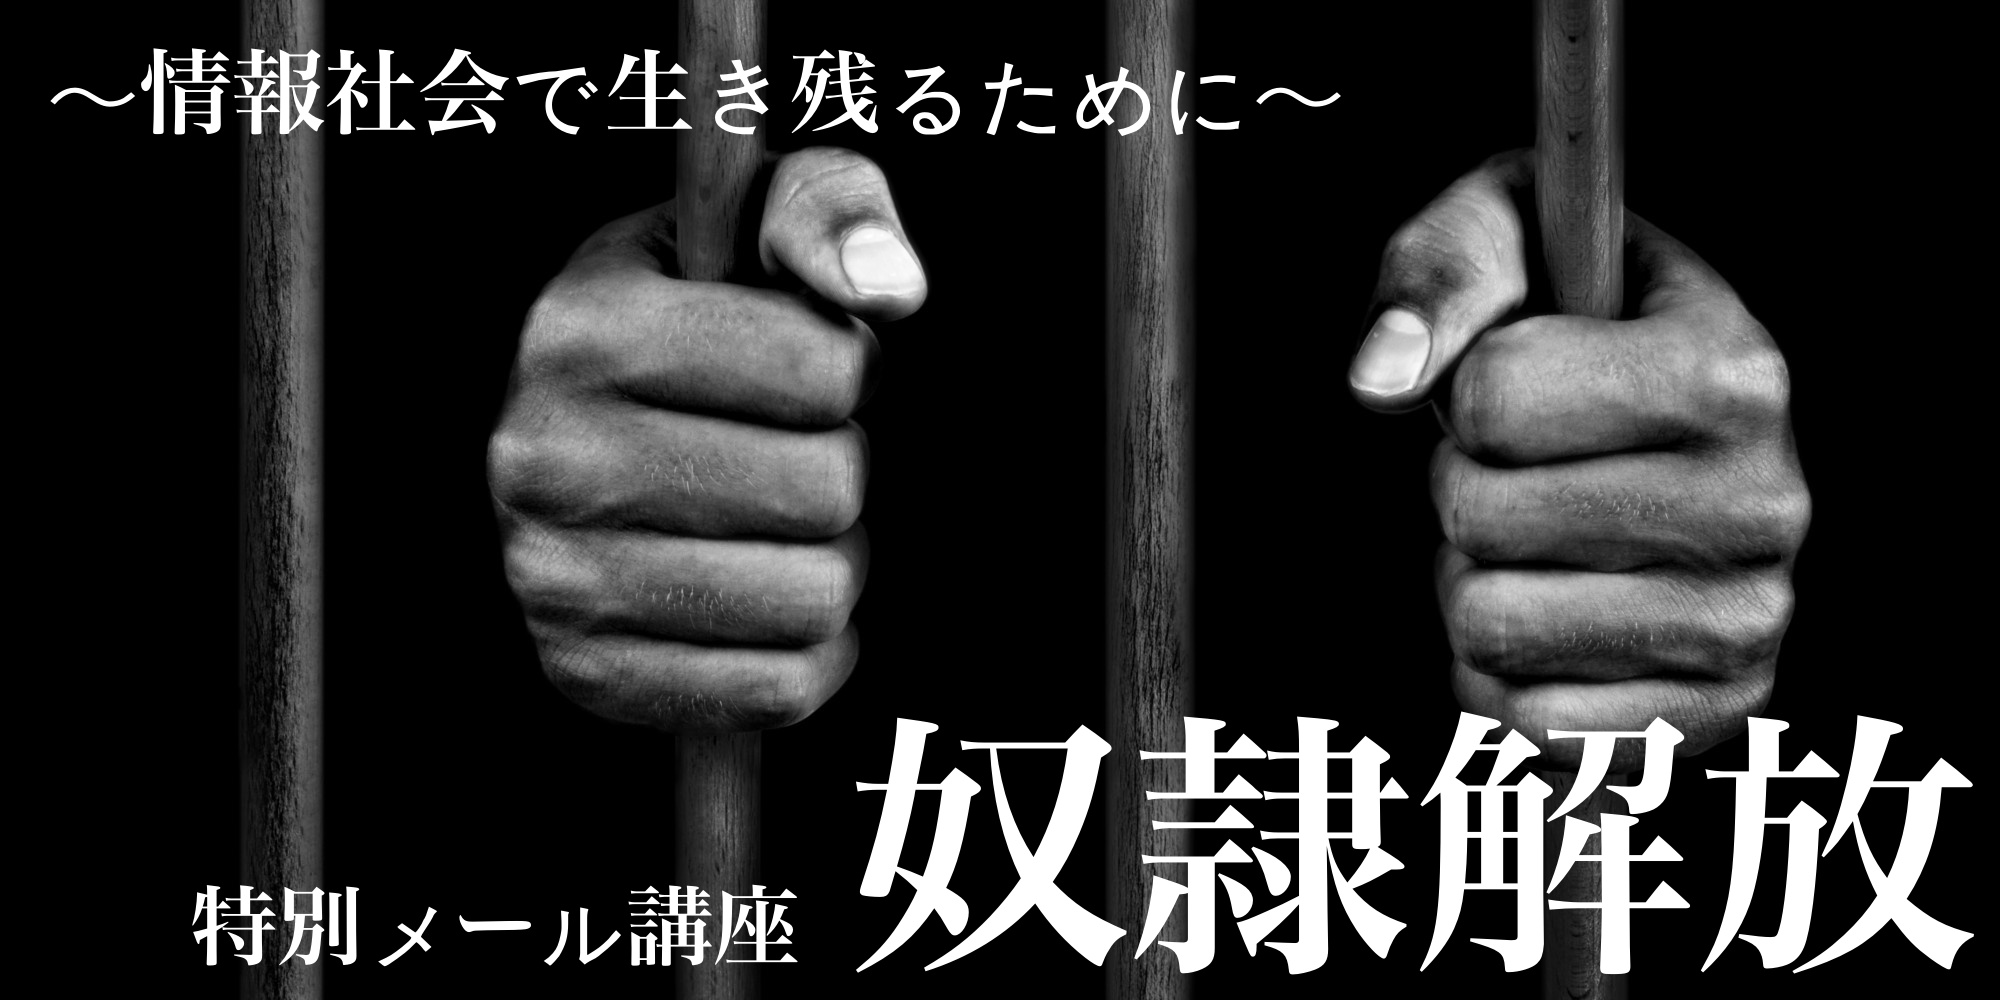 hands of a prisoner on prison bars